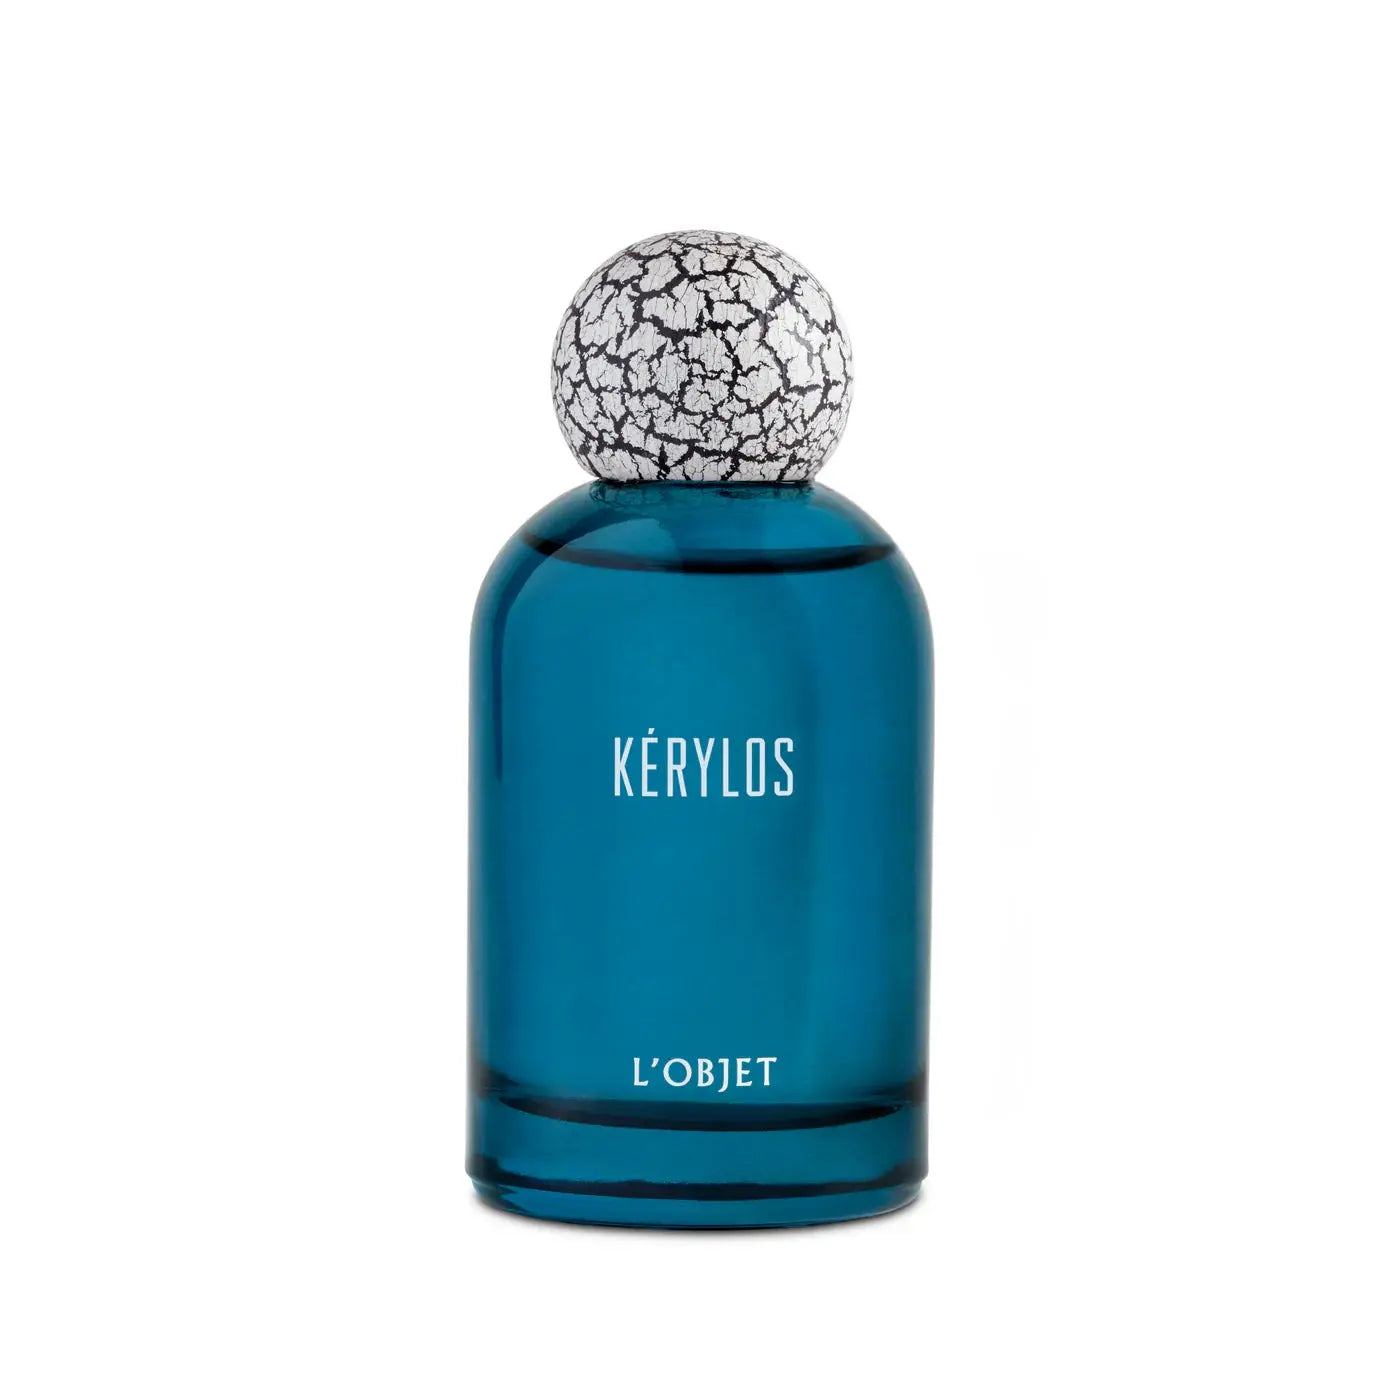 The Kerylos objet - 50 ml